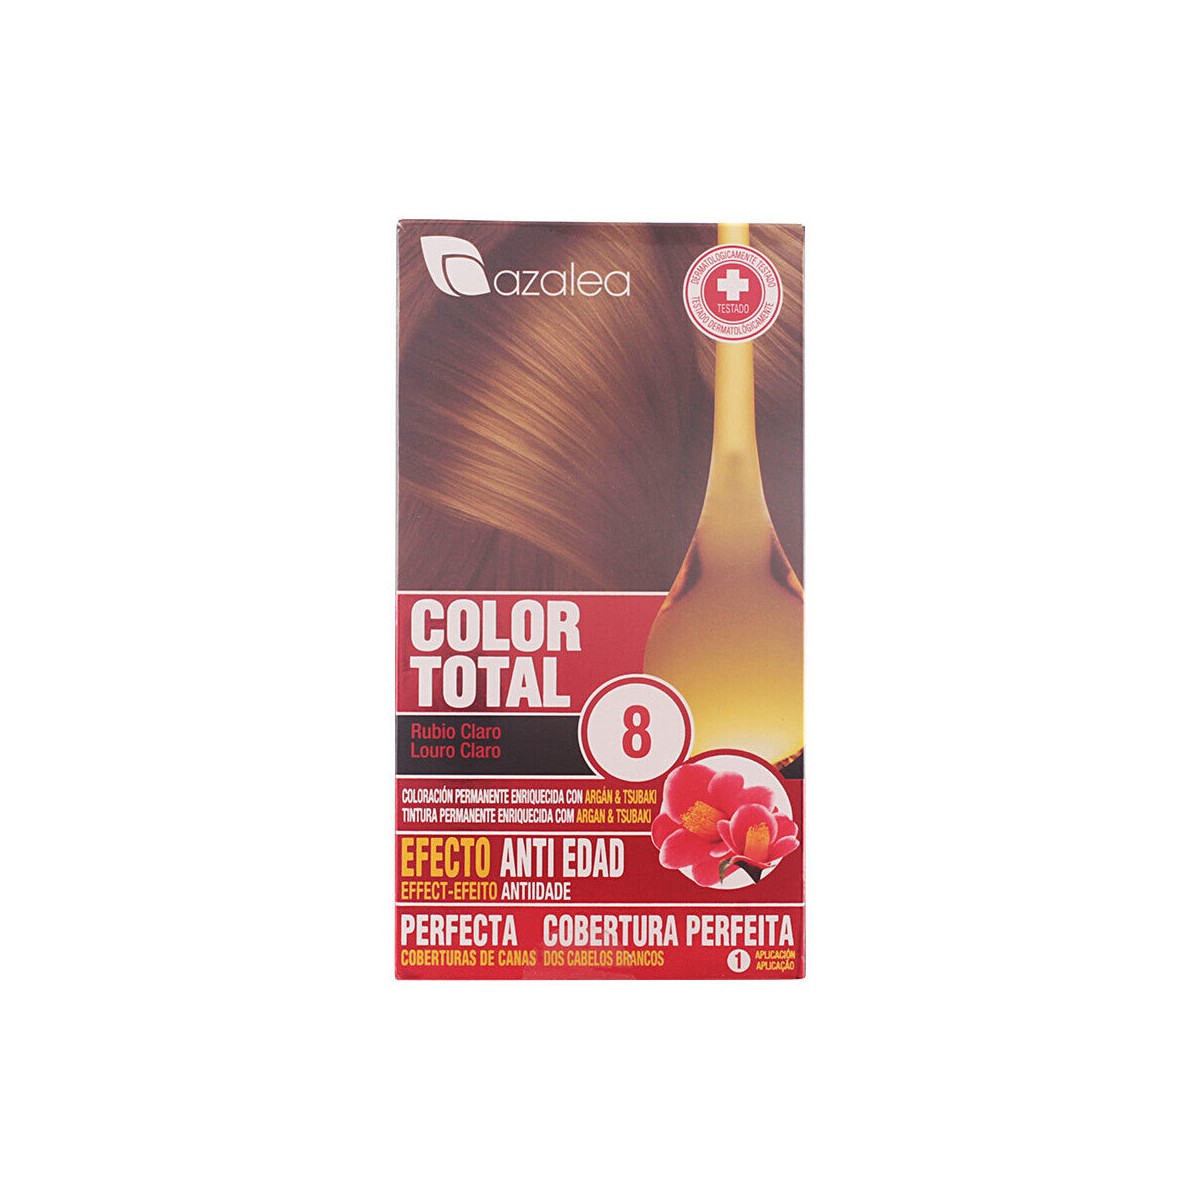 Beauty Damen Haarfärbung Azalea Color Total 8-rubio Claro 